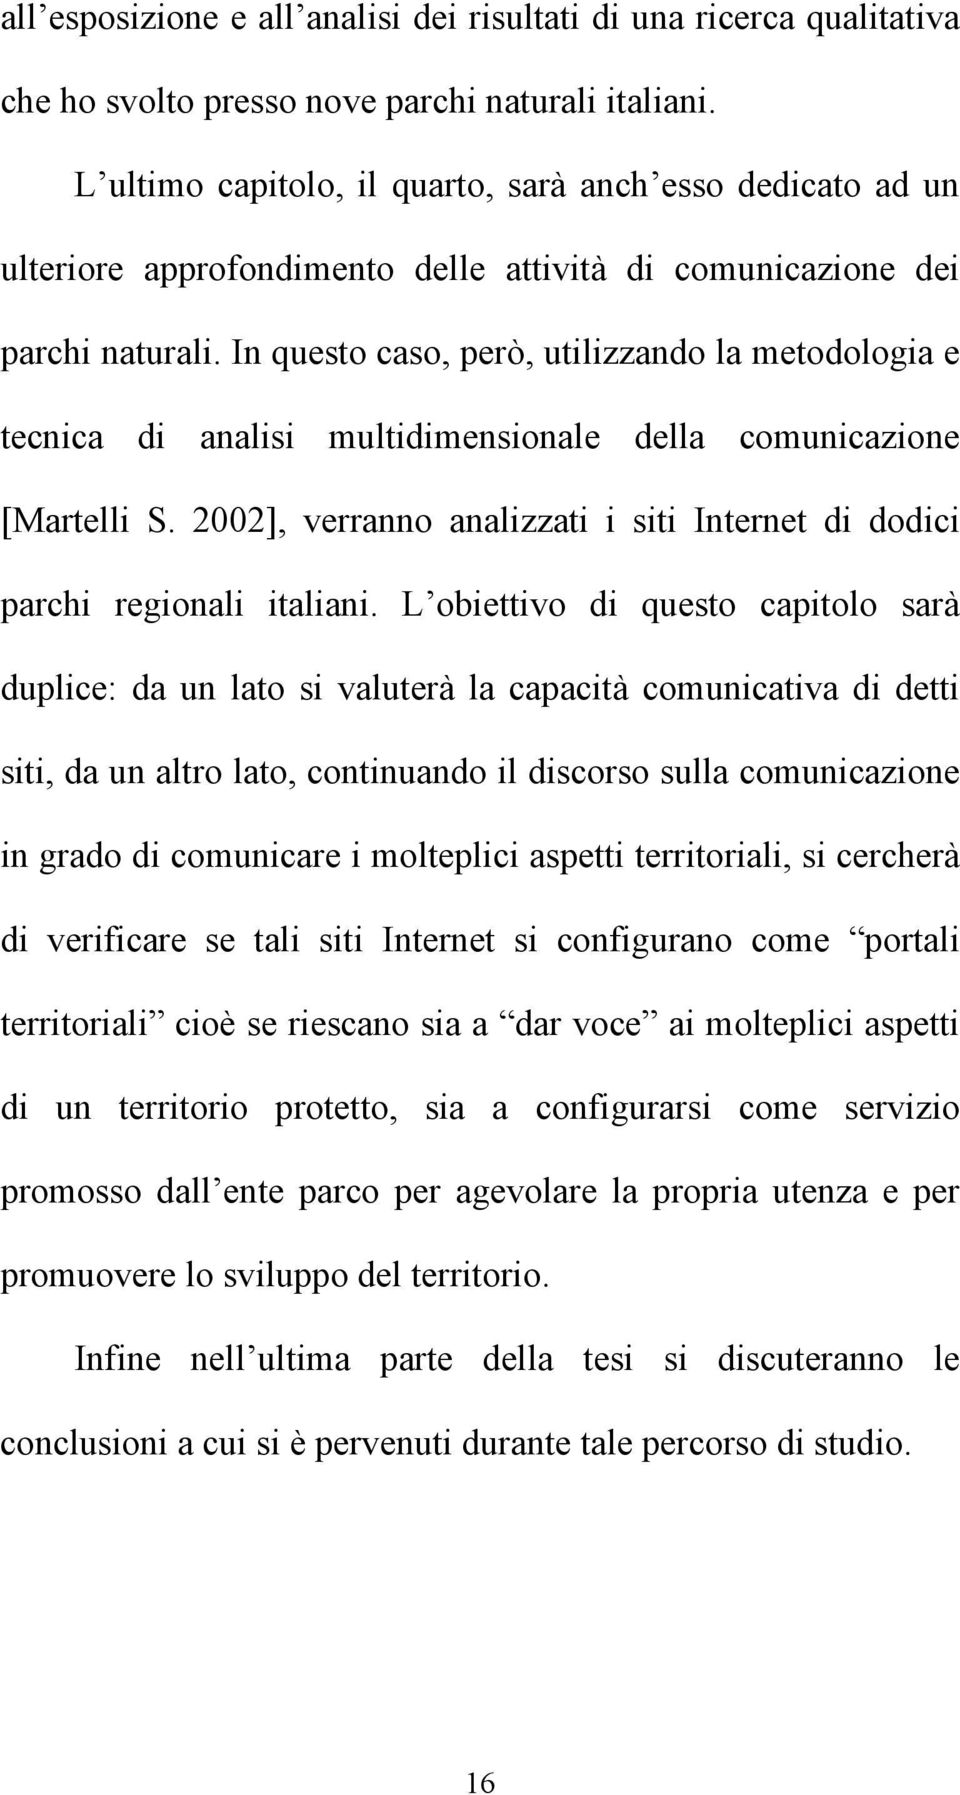 In questo caso, però, utilizzando la metodologia e tecnica di analisi multidimensionale della comunicazione [Martelli S. 2002], verranno analizzati i siti Internet di dodici parchi regionali italiani.